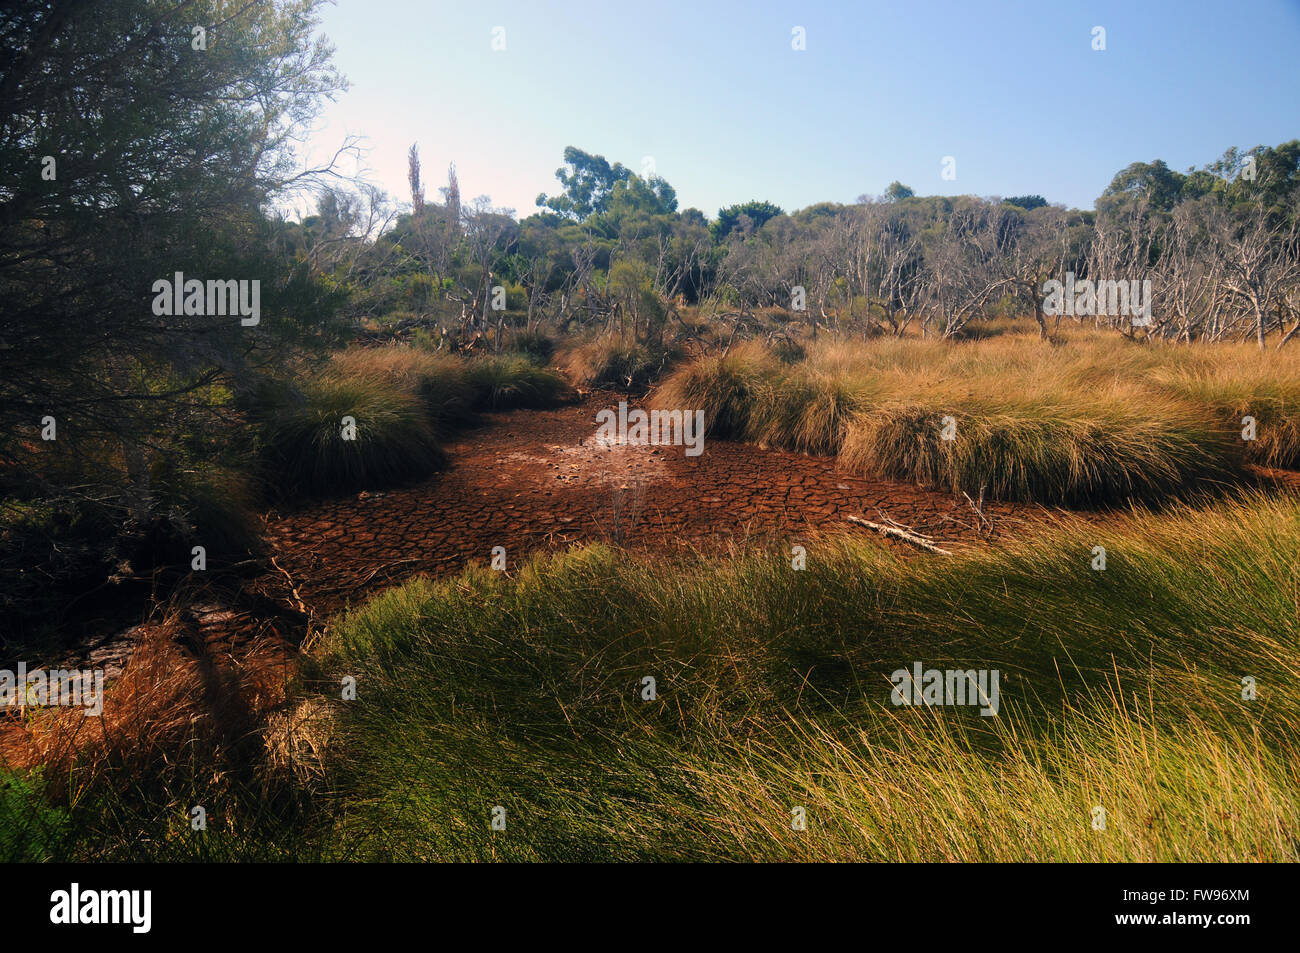 Un été sec anormalement chaud signifie que certaines parties de l'Baigup Les terres humides sont complètement asséchés, Perth, Australie occidentale Banque D'Images